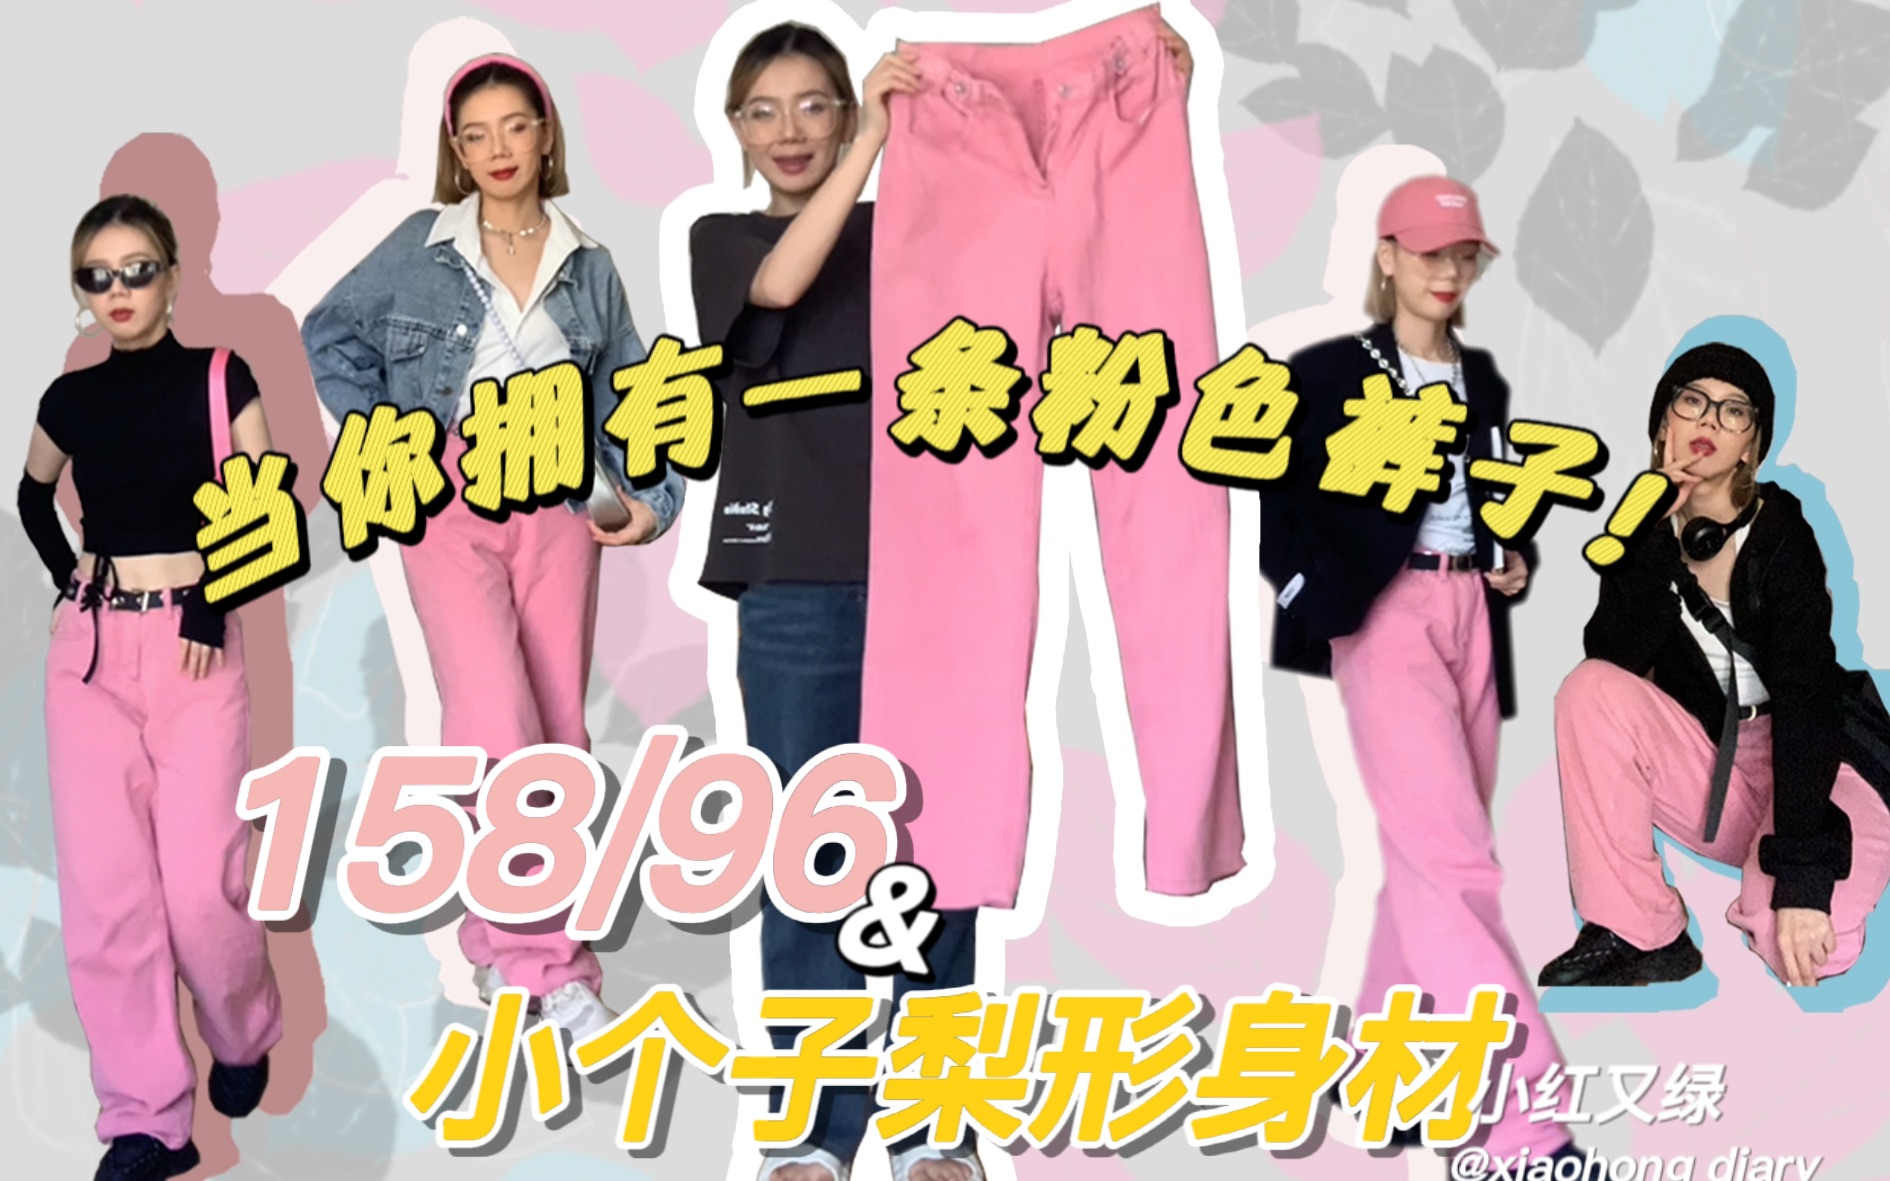 [158/96小个子梨形身材]当你拥有一条粉色裤子!💗 你可以这样~那样~~嘿嘿🤤